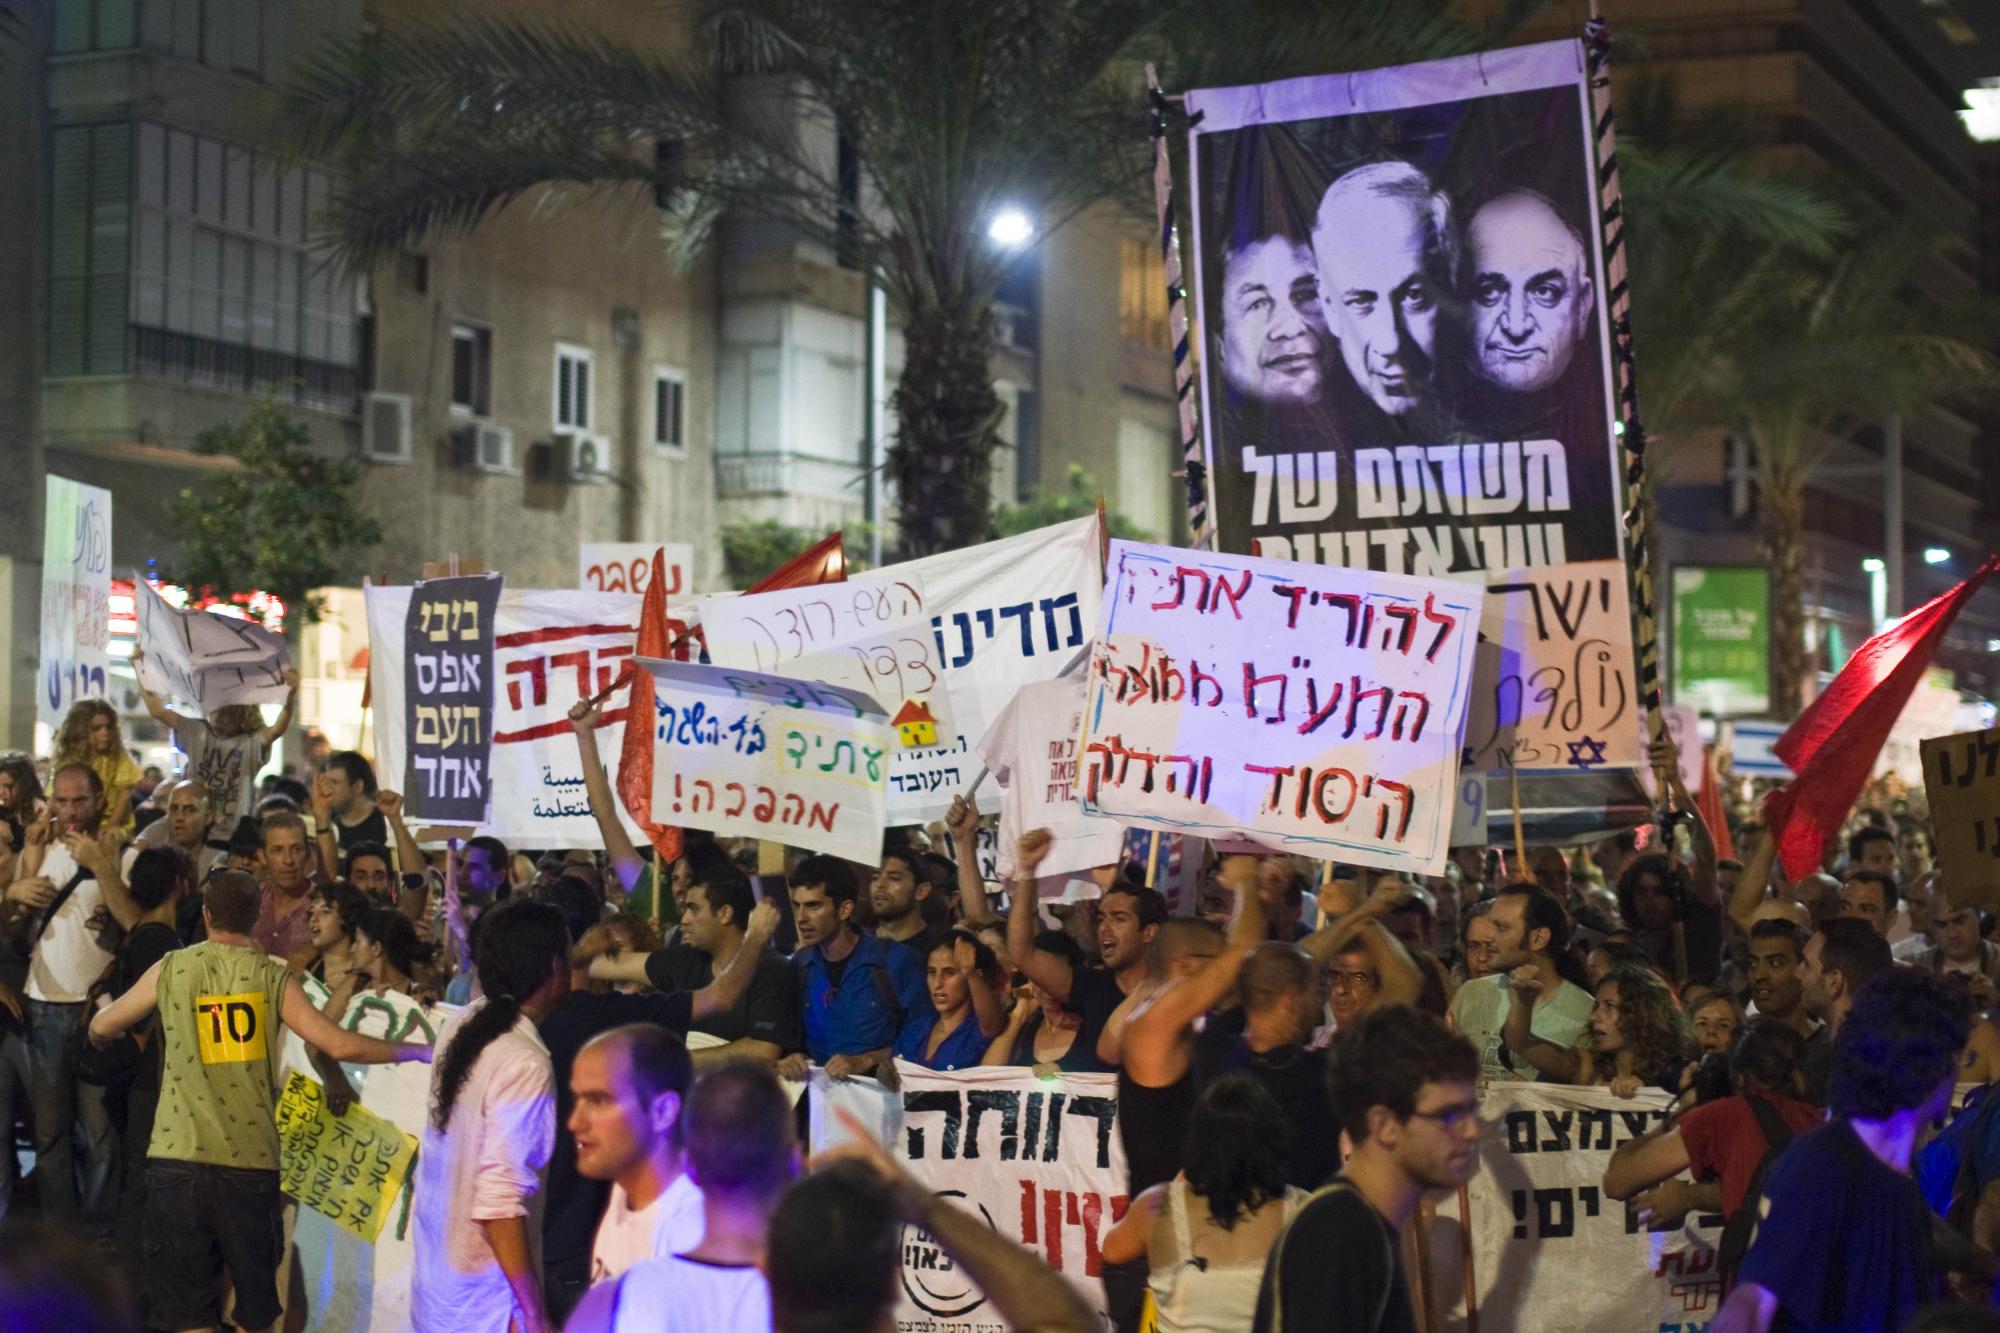 以色列全国爆发大规模游行 年轻人对福利不满、抗议高房价